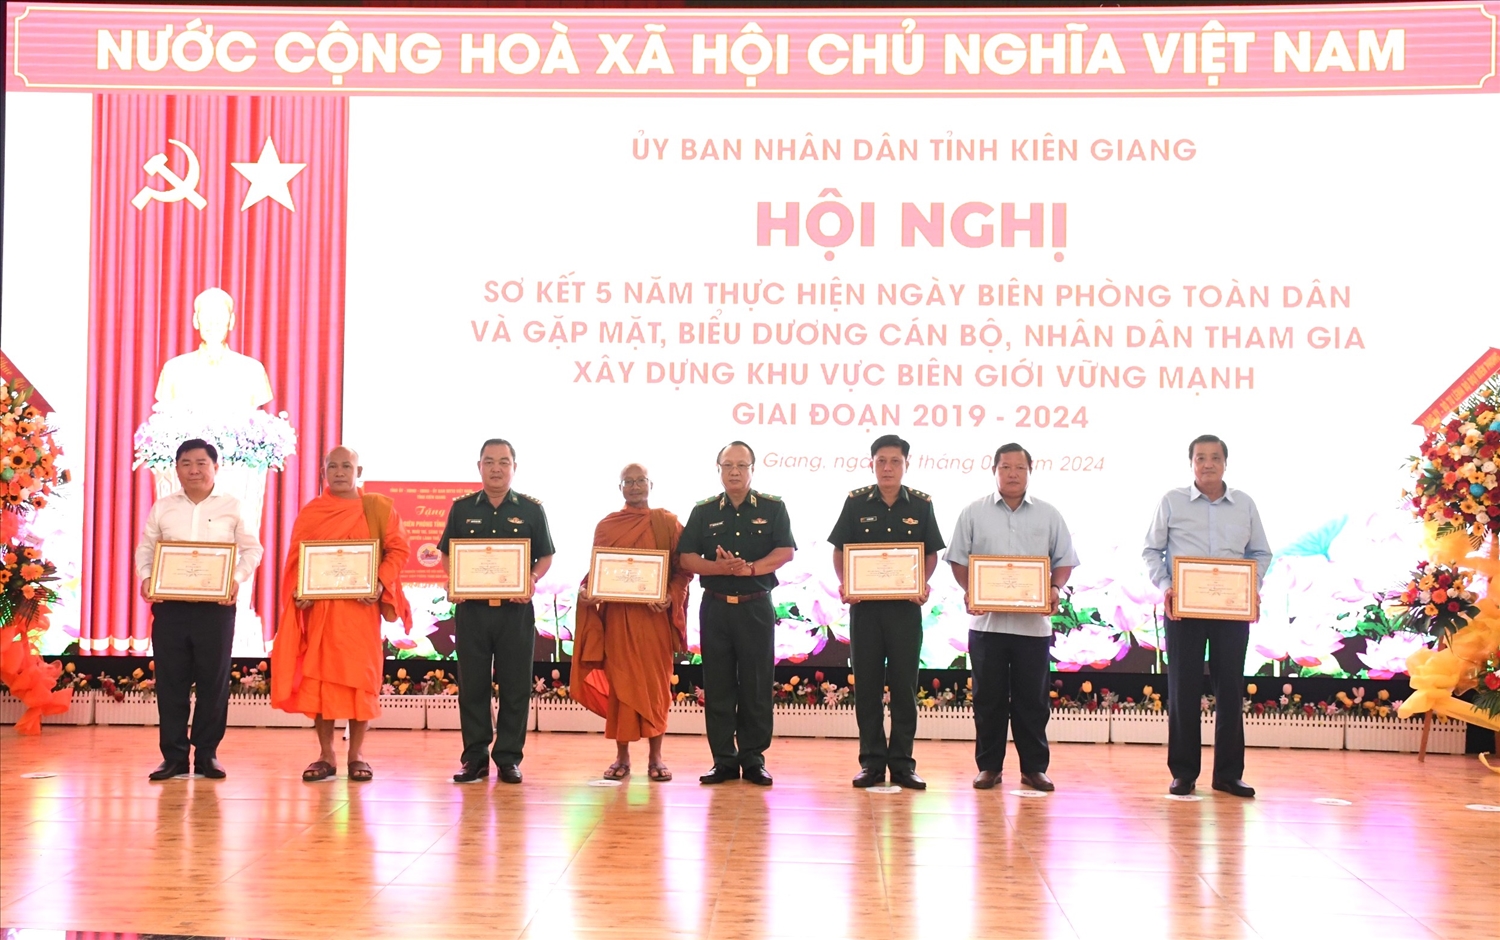 Thiếu tướng Nguyễn Hoài Phương, trao bằng khen của Bộ Tư Lệnh BĐBP đến các tập thể và cá nhân đã có thành tích xuất sắc trong thực hiện Ngày biên phòng toàn dân giai đoạn 2019-2024